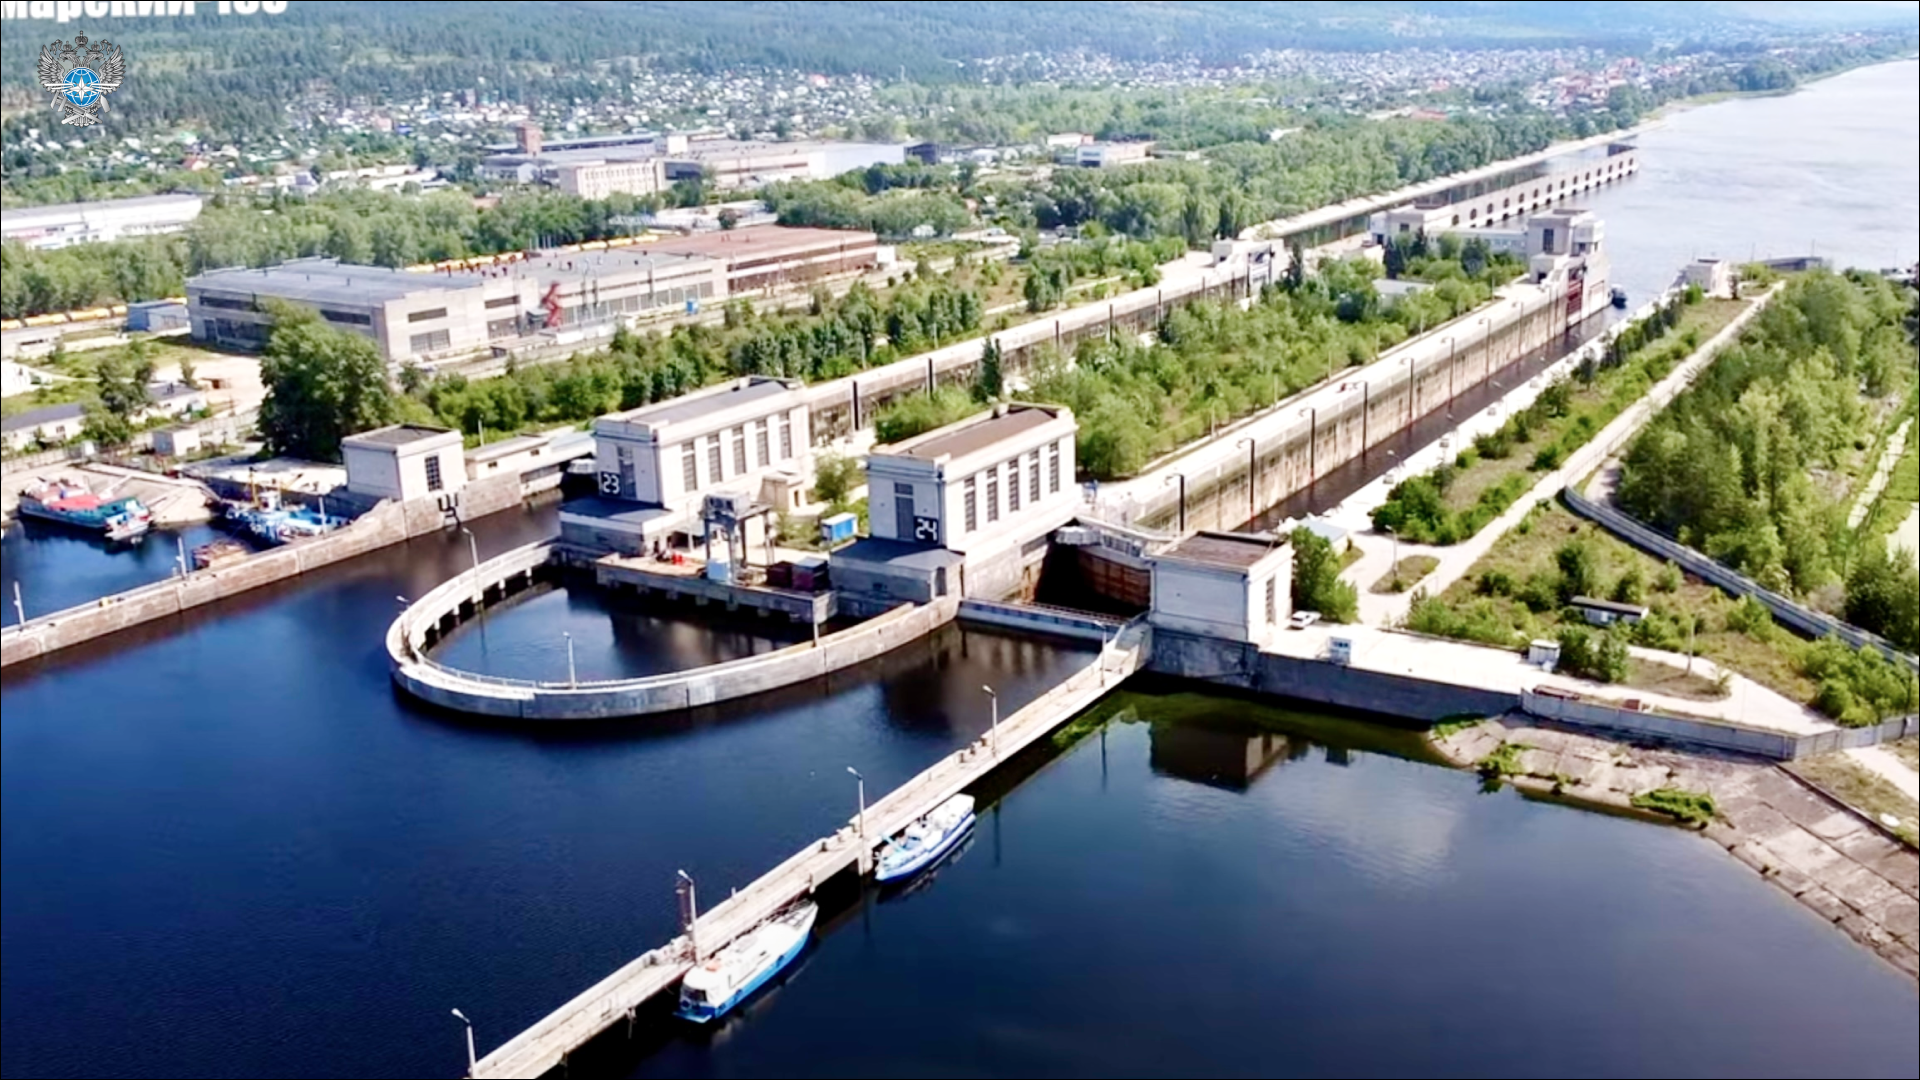 Проект реконструкции шлюзов Городецкого гидроузла прошел Главгосэкспертизу